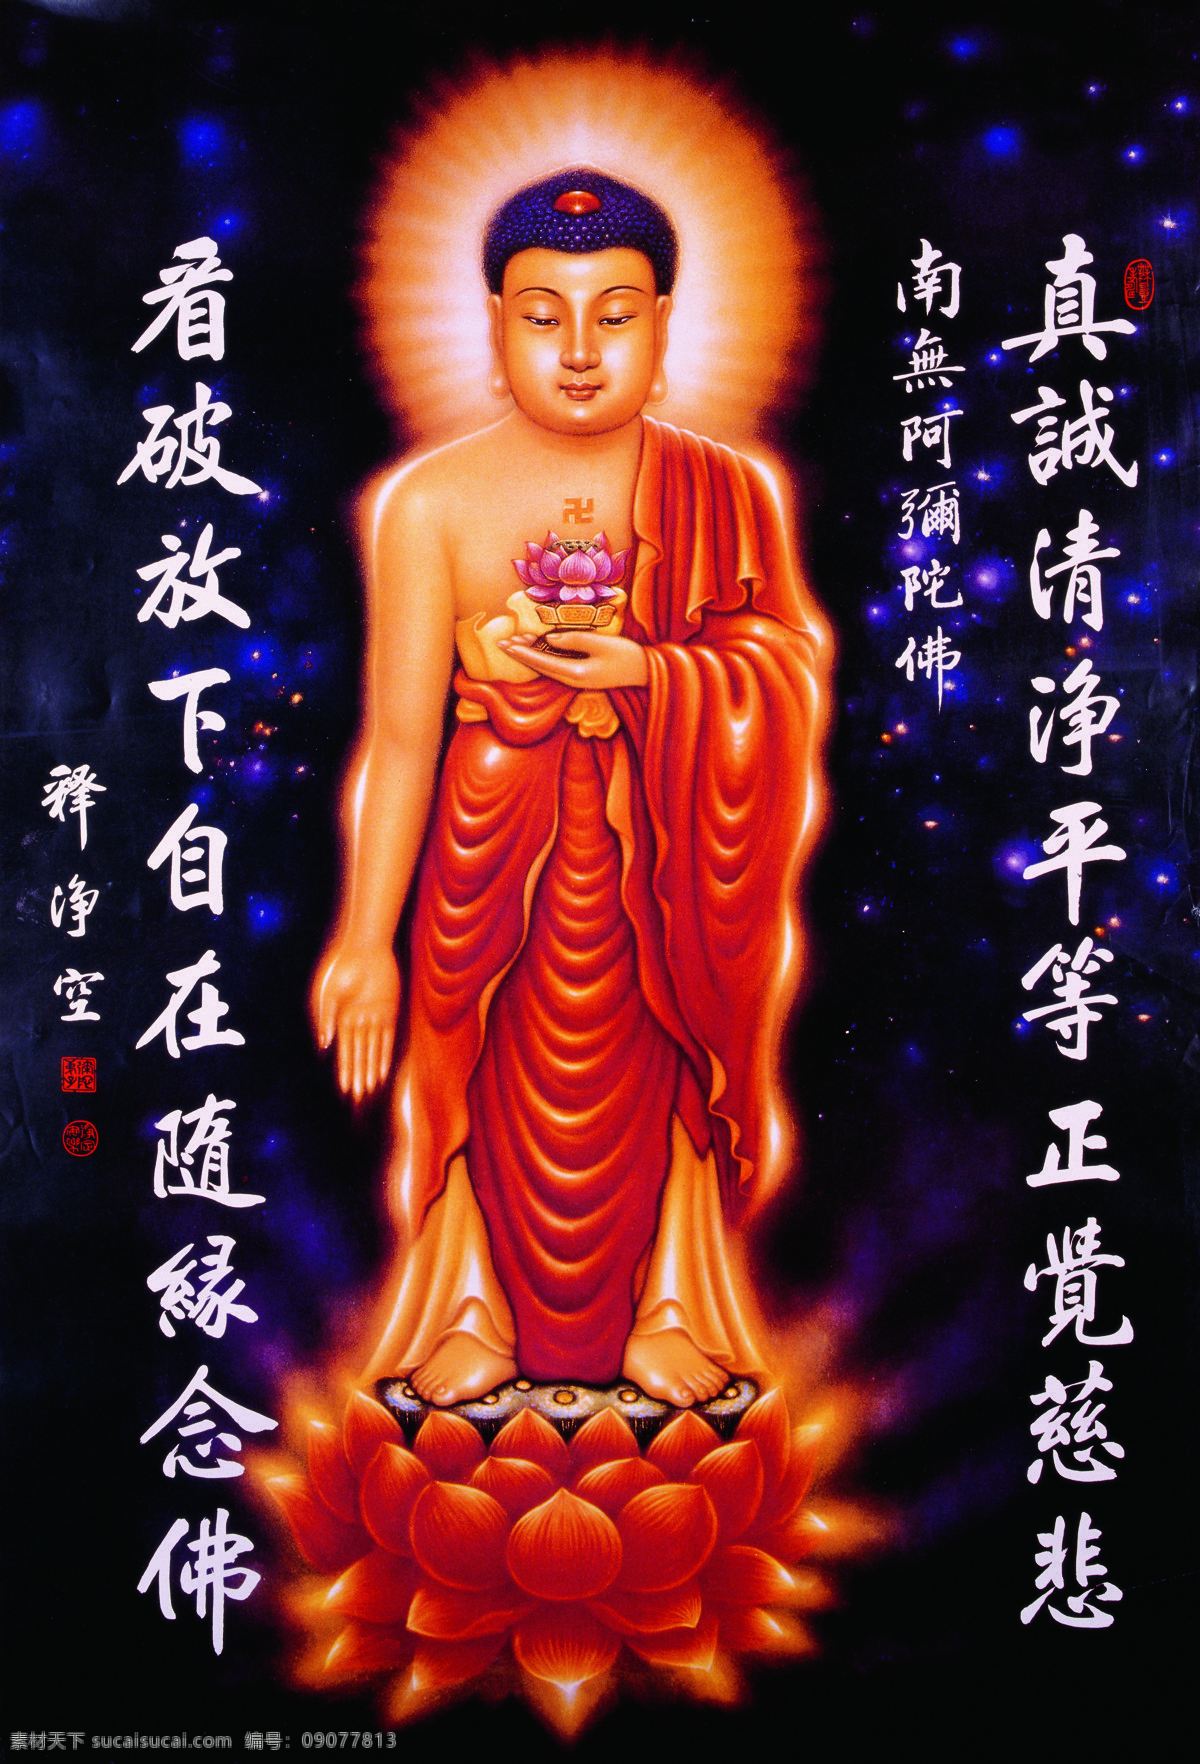 阿弥陀佛像 佛教 中国艺术 阿弥陀佛圣象 佛画 庄严法相 黑色